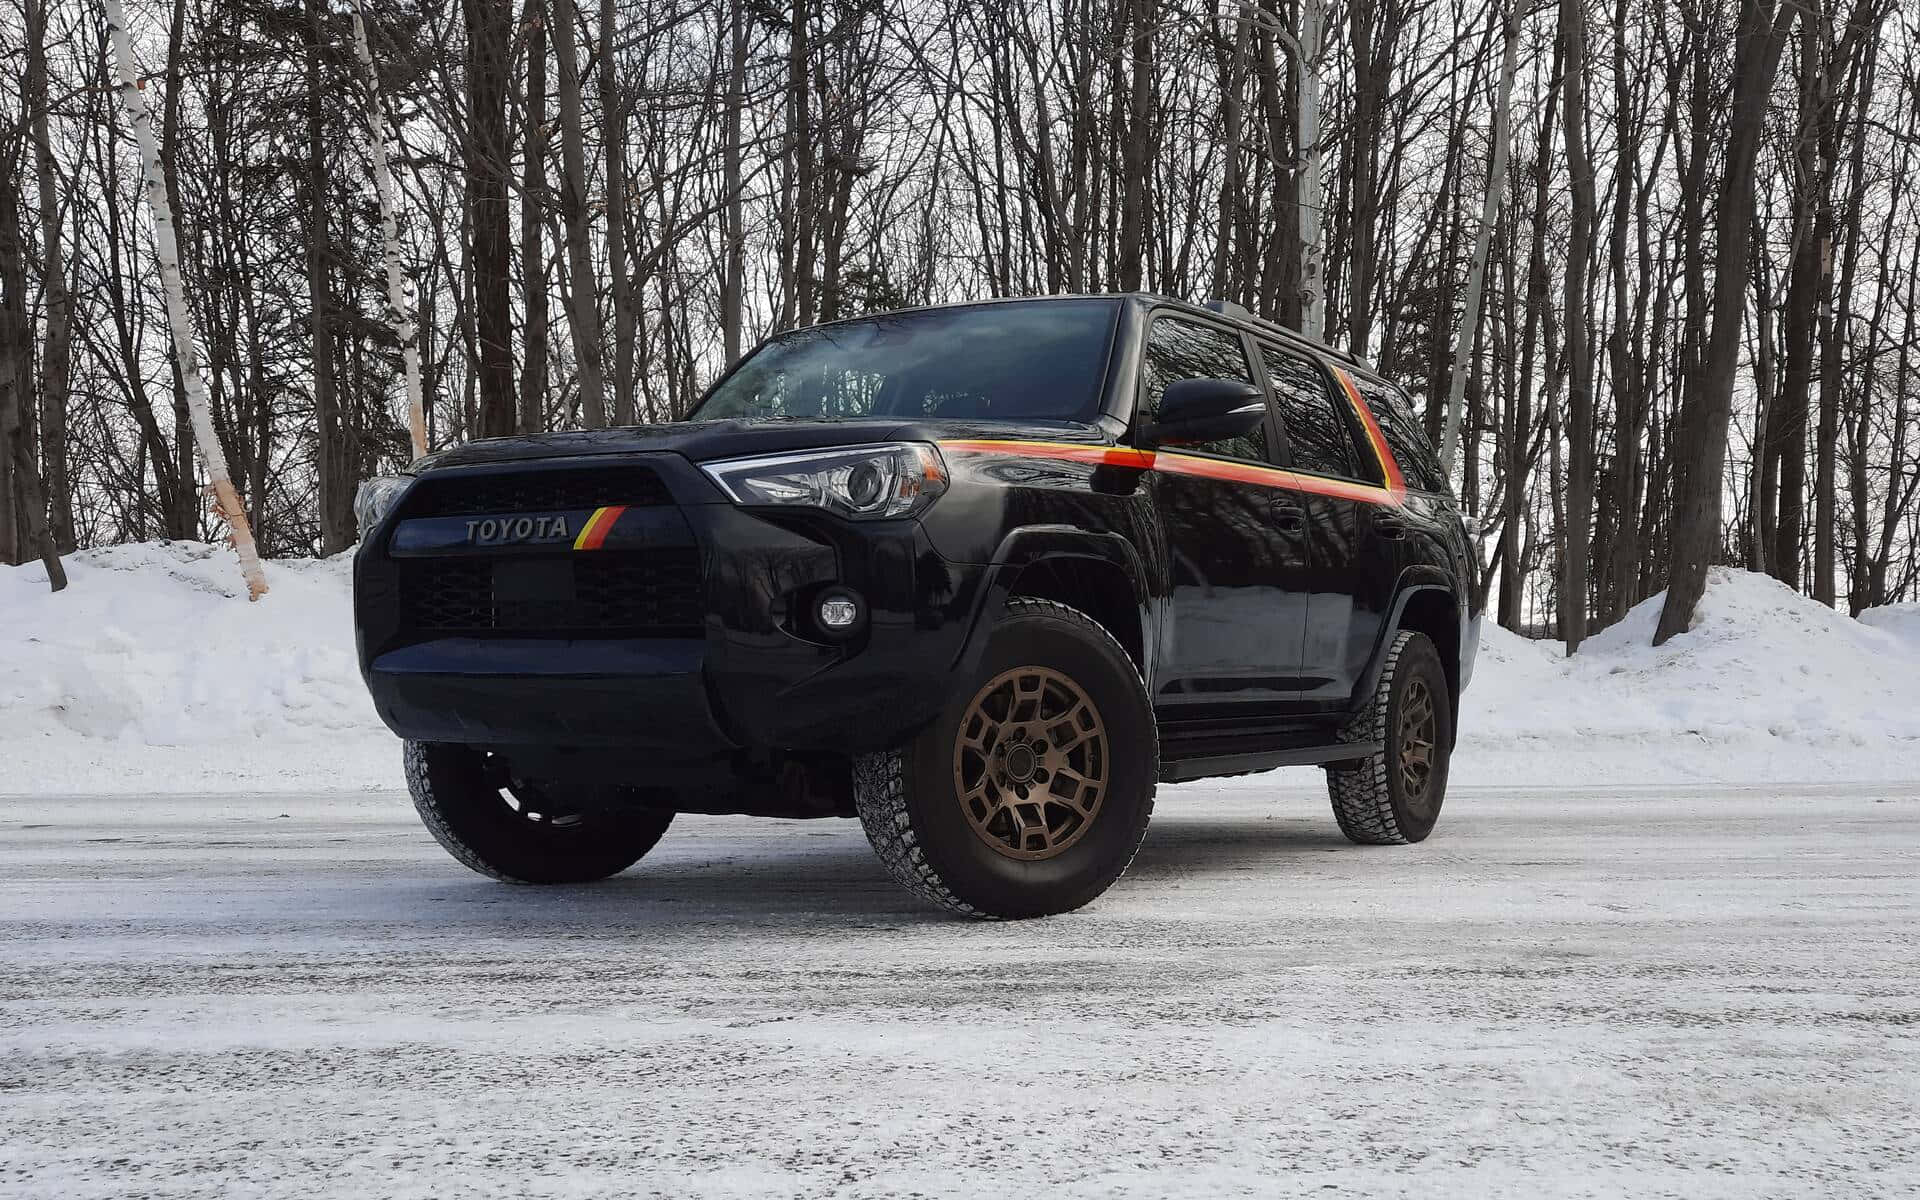 Ensvart Toyota 4runner Står Parkerad I Snön